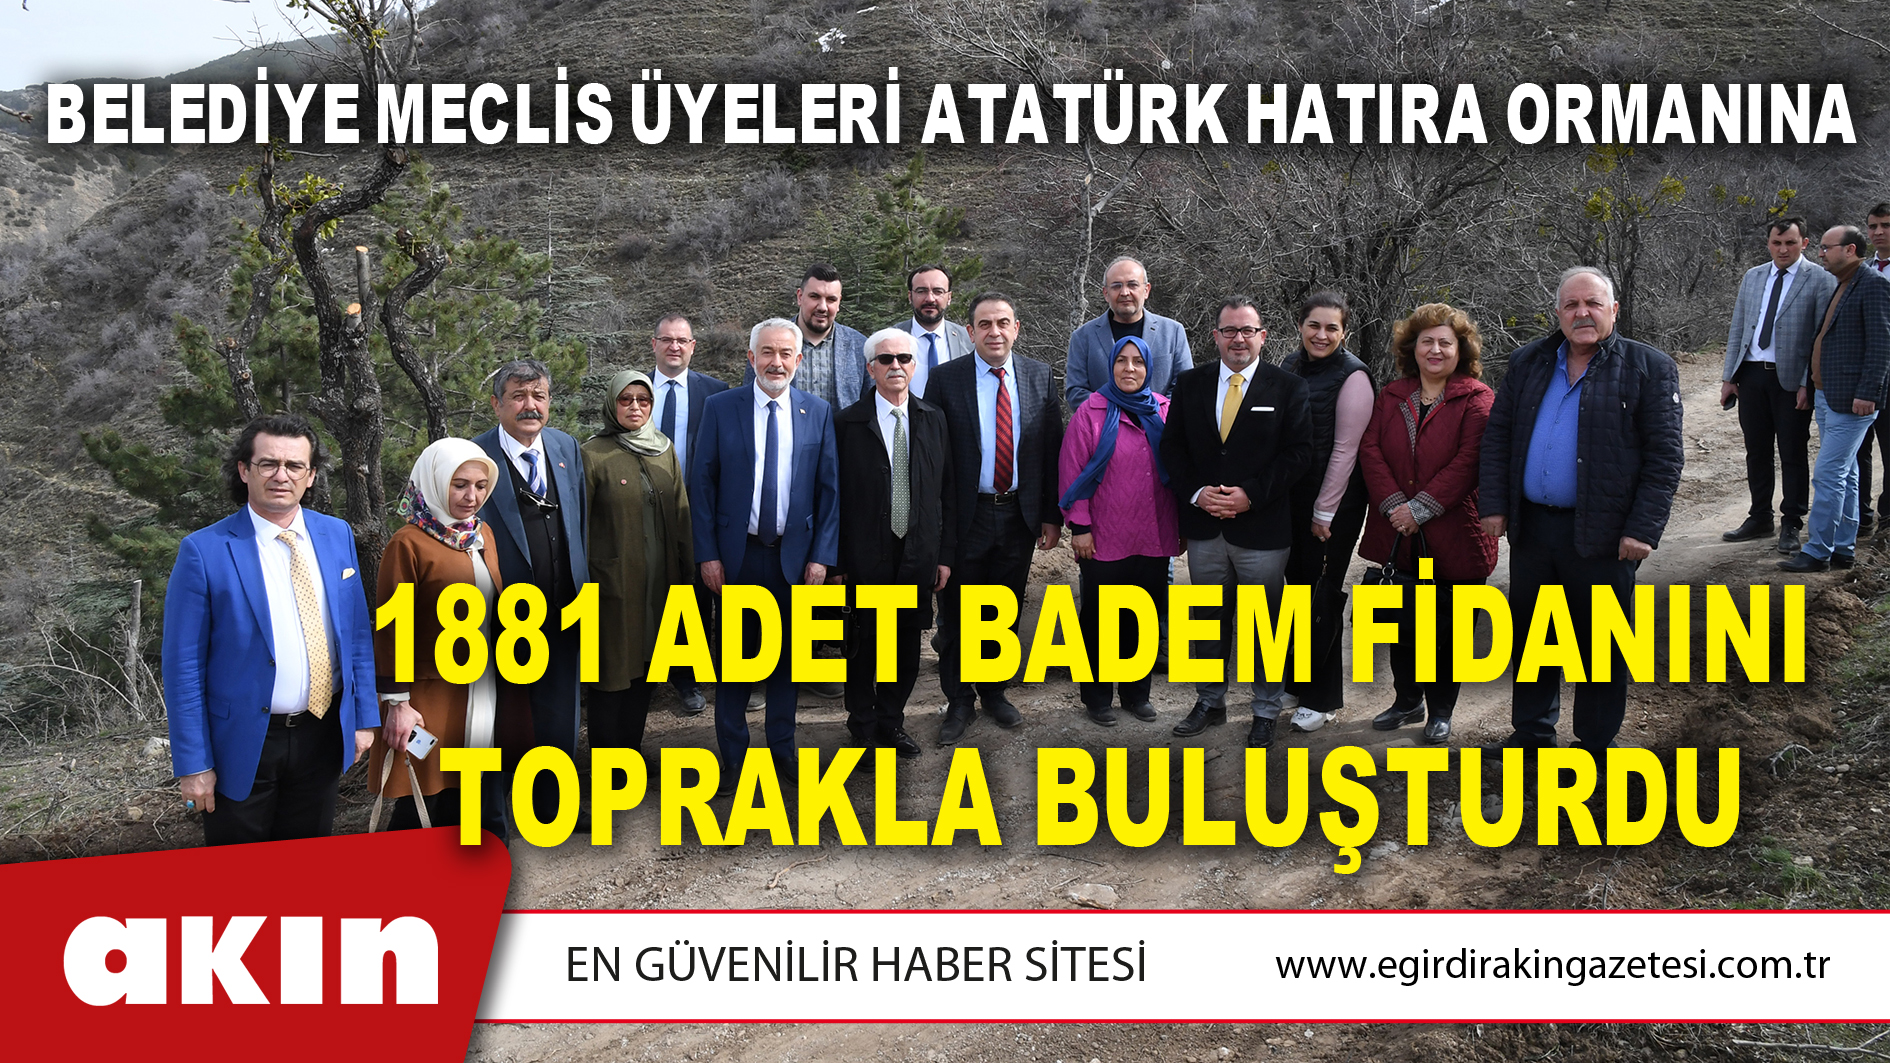 Belediye Meclis Üyeleri Atatürk Hatıra Ormanına 1881 Adet Badem Fidanını Toprakla Buluşturdu